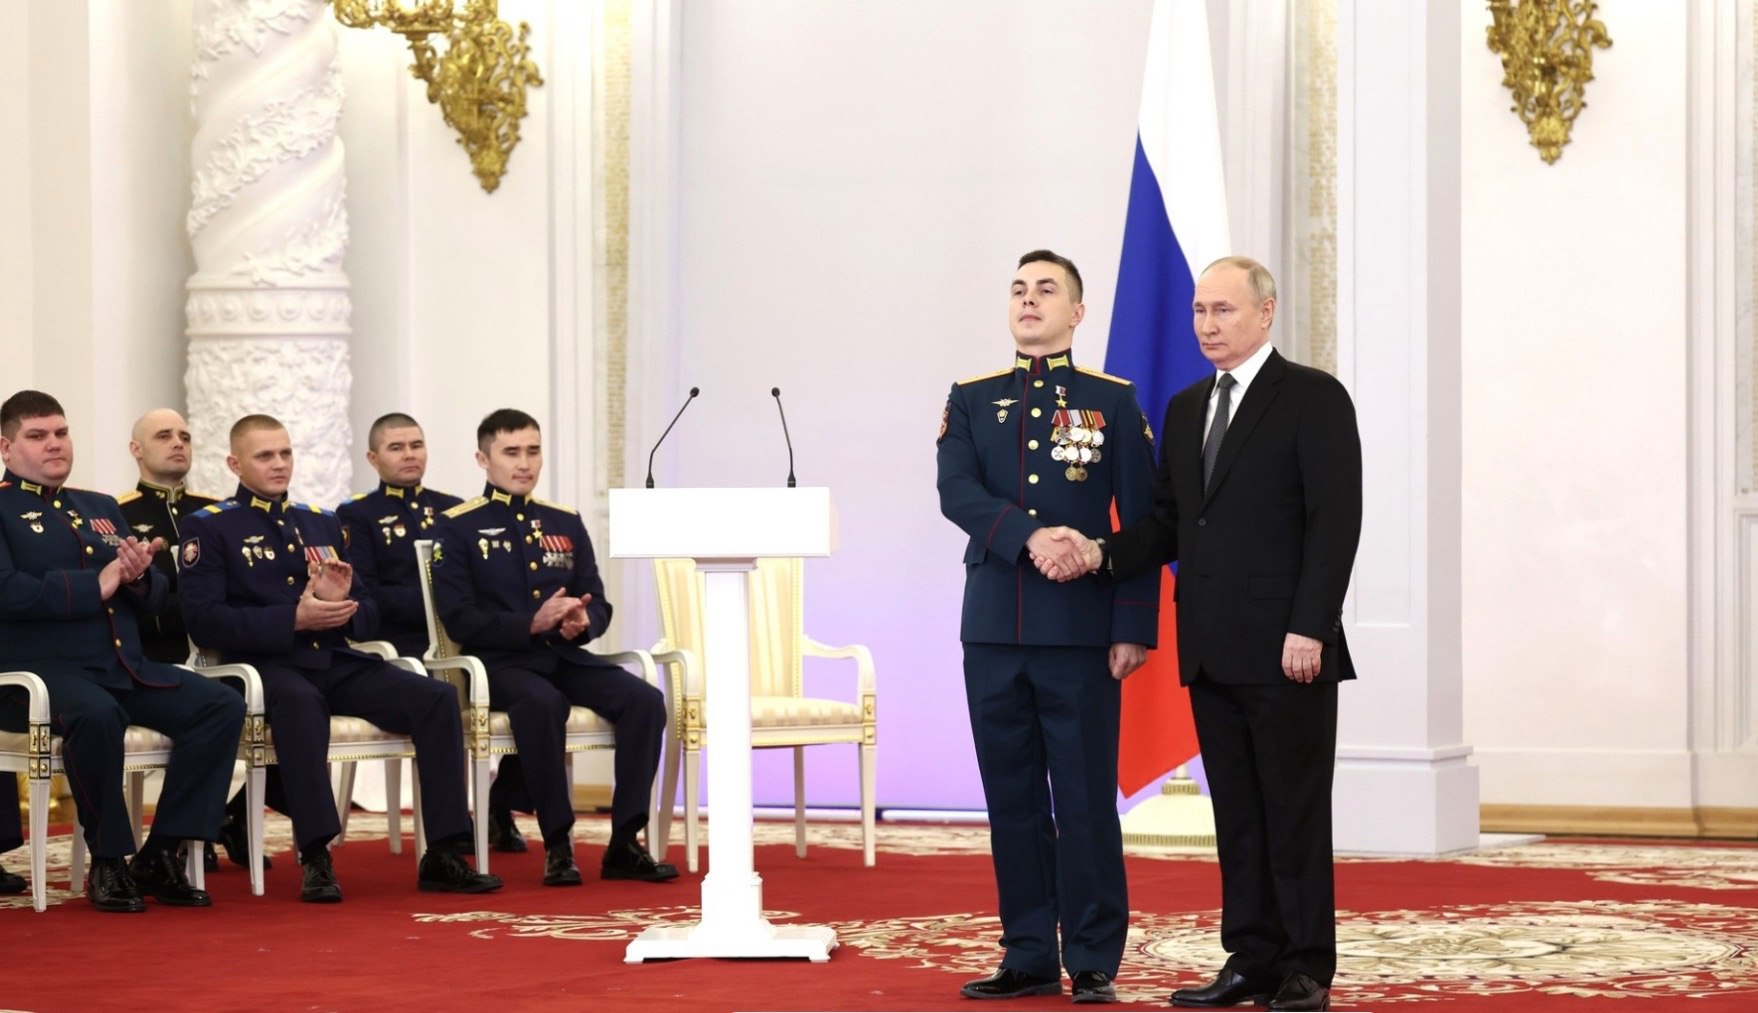 Maksim Potašev sai Venäjän sankarin kultatähden maan presidentin Vladimir Putinin käsistä 8. joulukuuta Yrjön salissa Kremlissä. Kuva: kremlin.ru